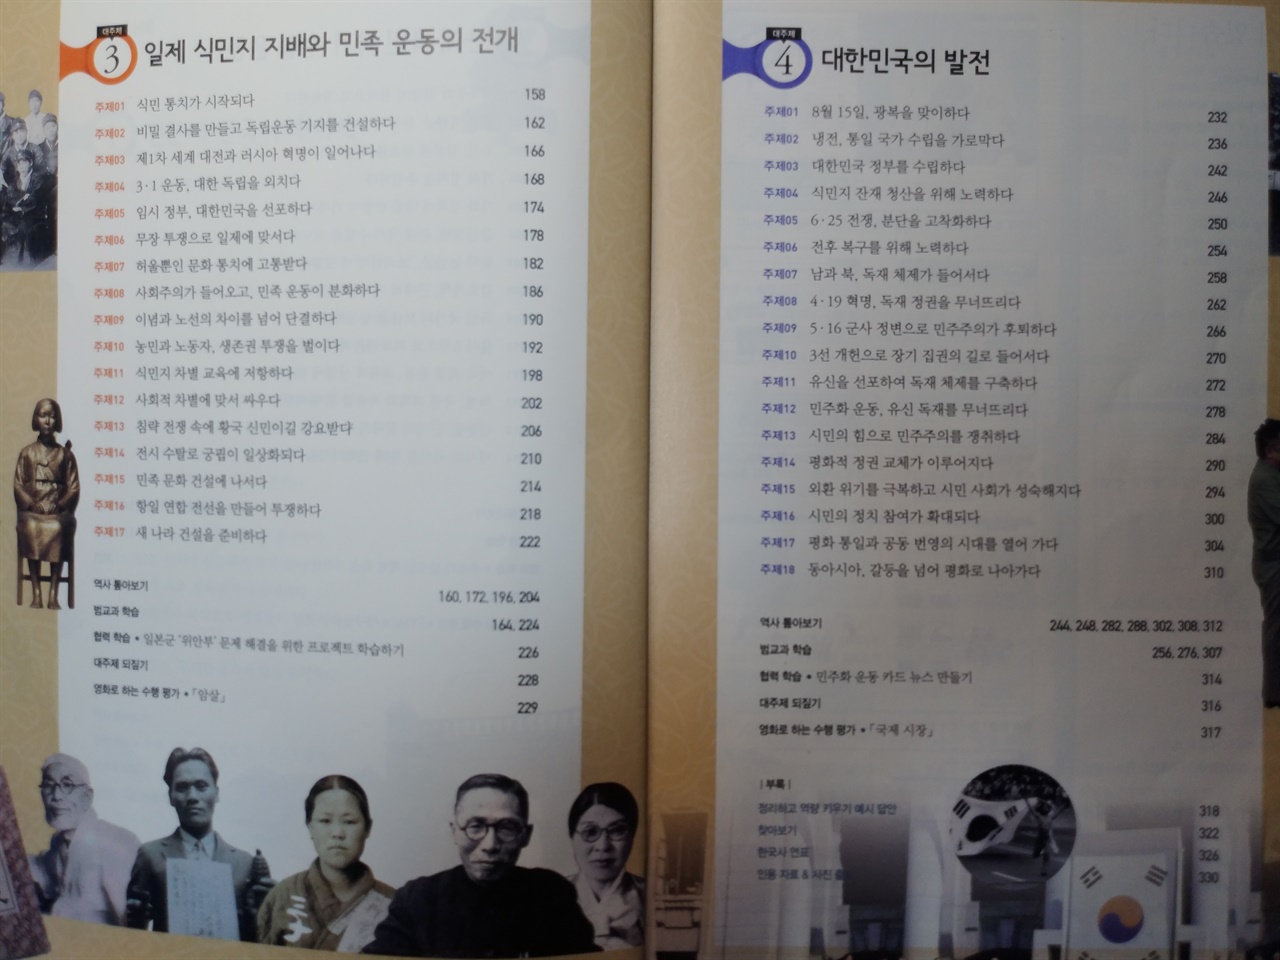 2015 개정 교육과정으로 개편된 현행 고등학교 한국사 교과서의 목차. 개항 이전의 전근대사는 전체 분량으로 치면 1/4에 불과하다.